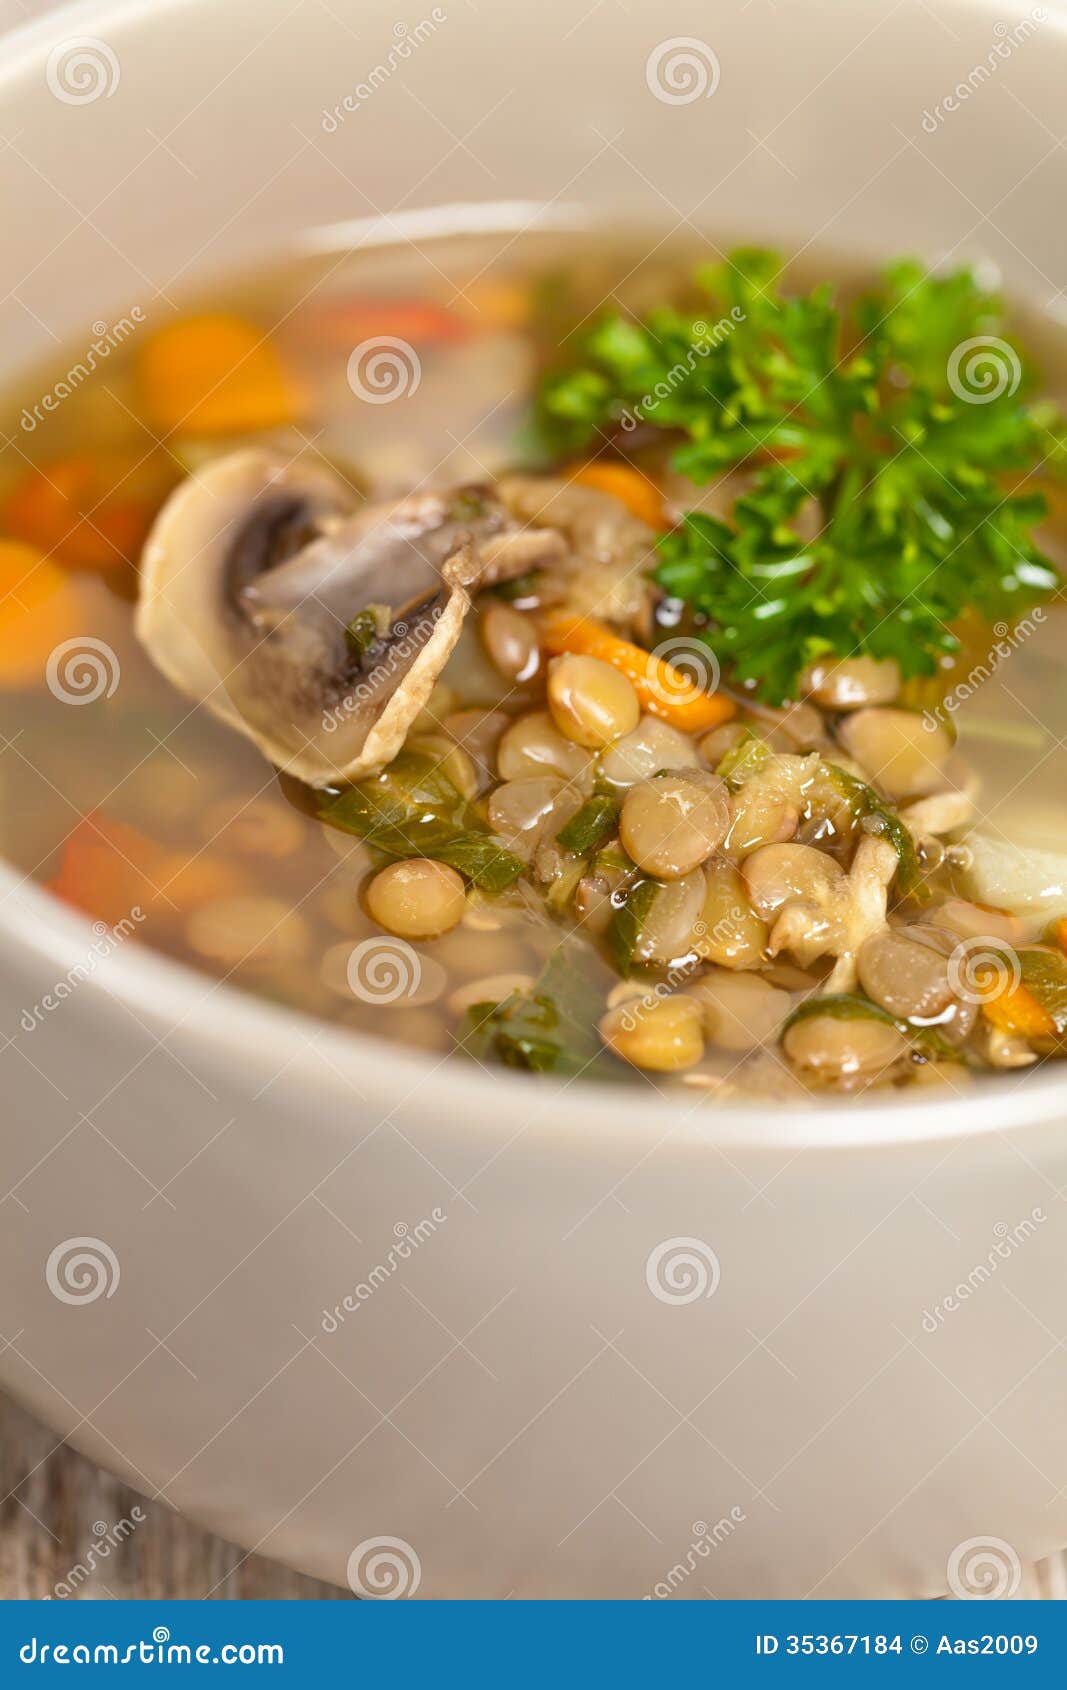 扁豆汤用香肠 库存图片. 图片 包括有 营养素, 红萝卜, 德语, 土豆, 健康, 午餐, 苹果酱, 扁豆 - 53527221